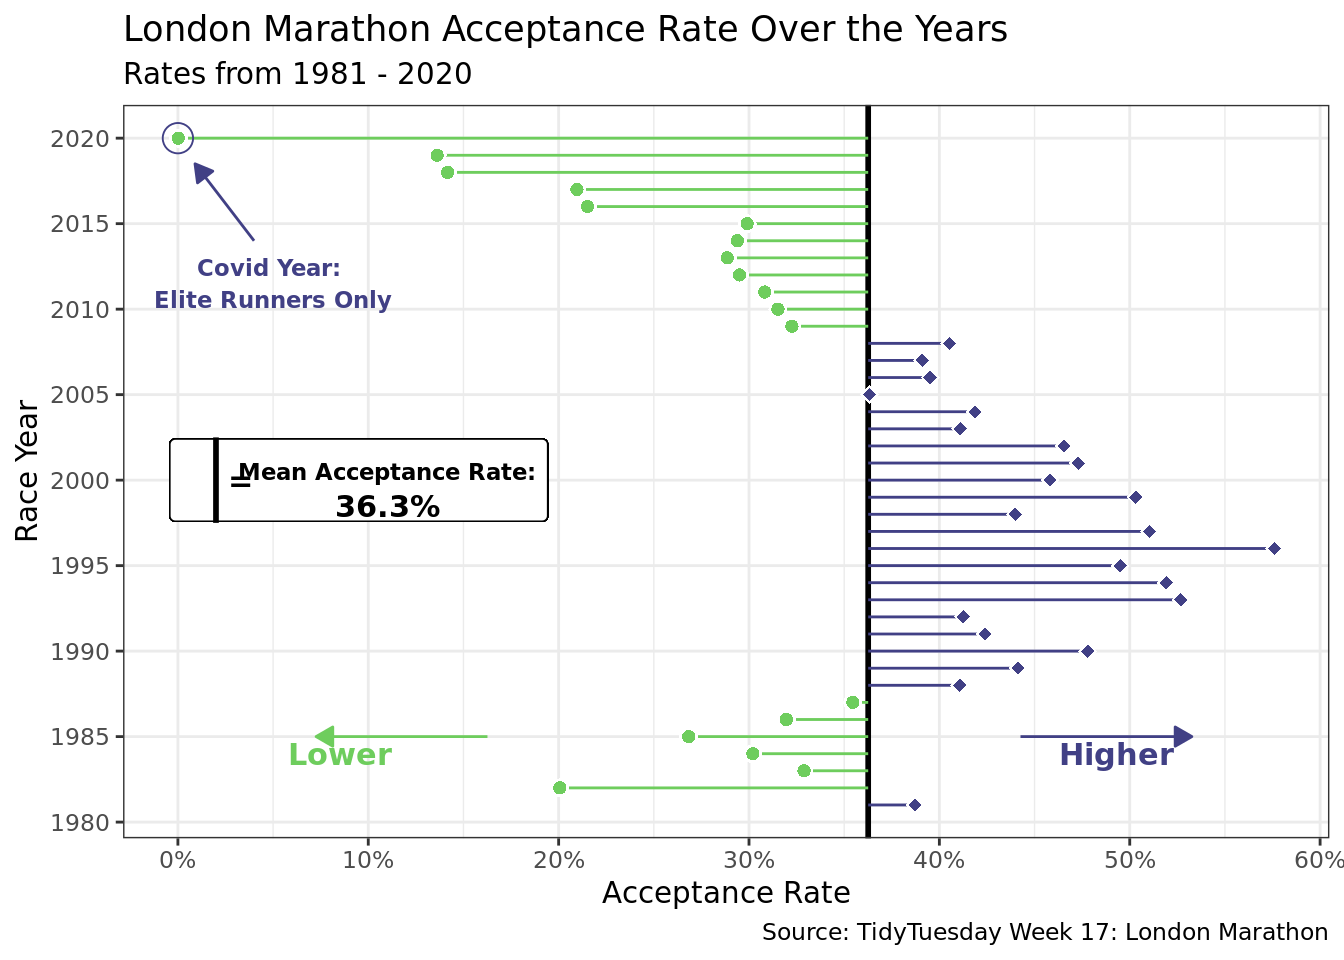 London Marathon Acceptance Rates Since 1981